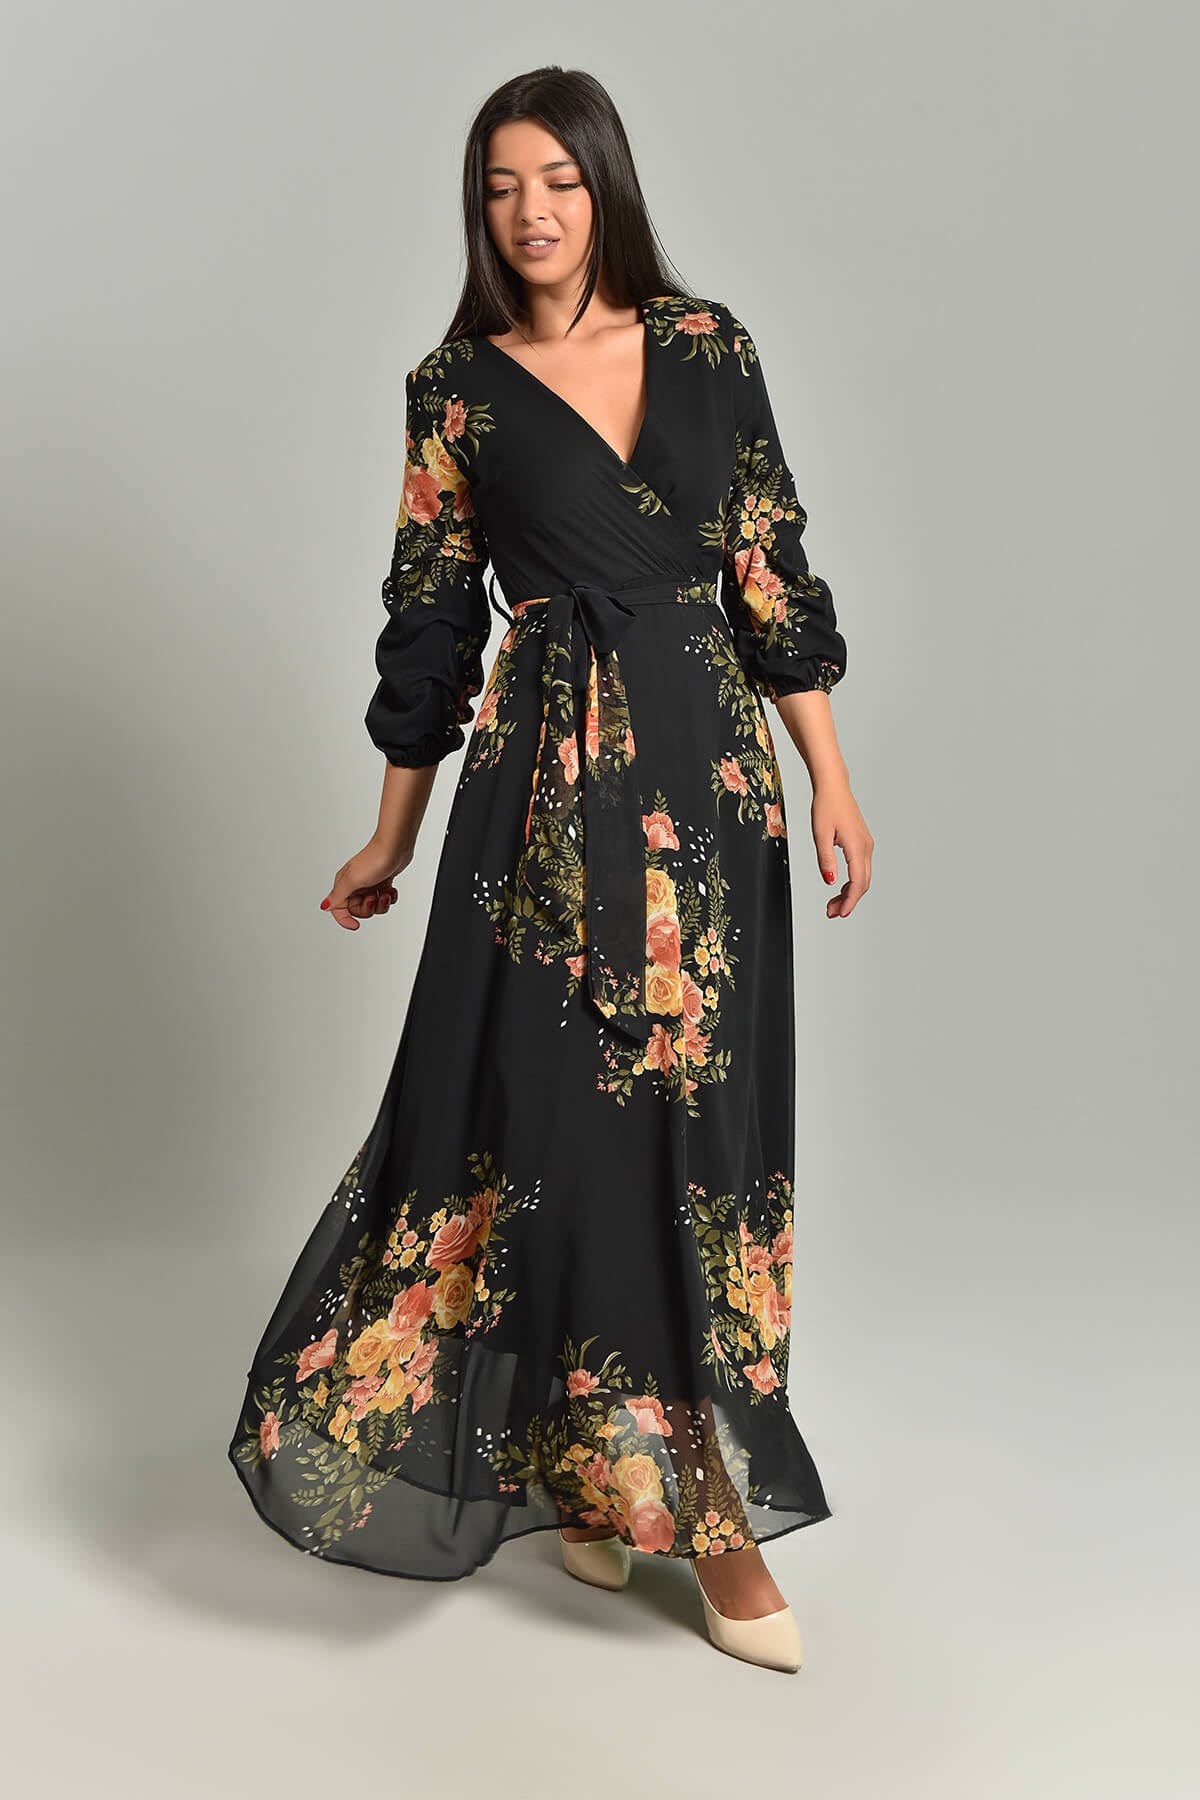 Siyah Kruvaze Kolları Büzgülü Şifon Elbise - Moda Kapımda İle Kapınızda!